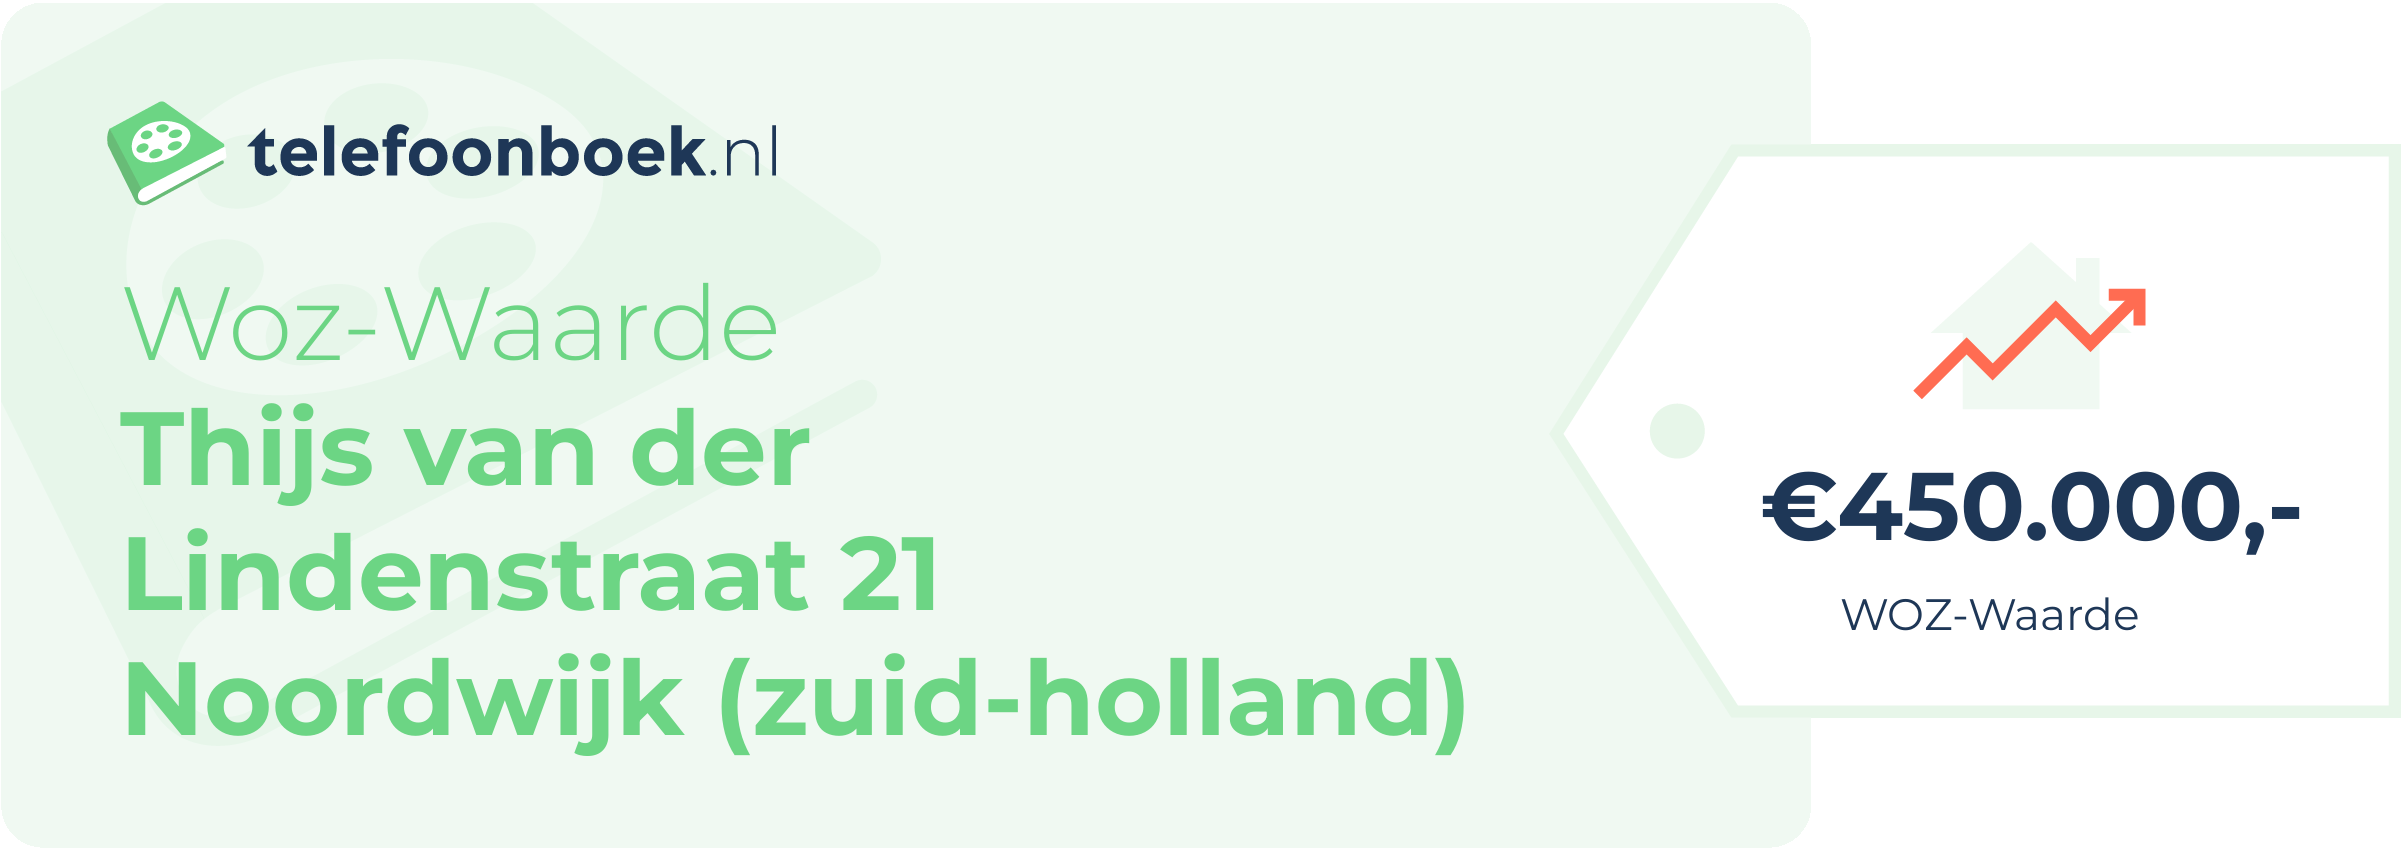 WOZ-waarde Thijs Van Der Lindenstraat 21 Noordwijk (Zuid-Holland)